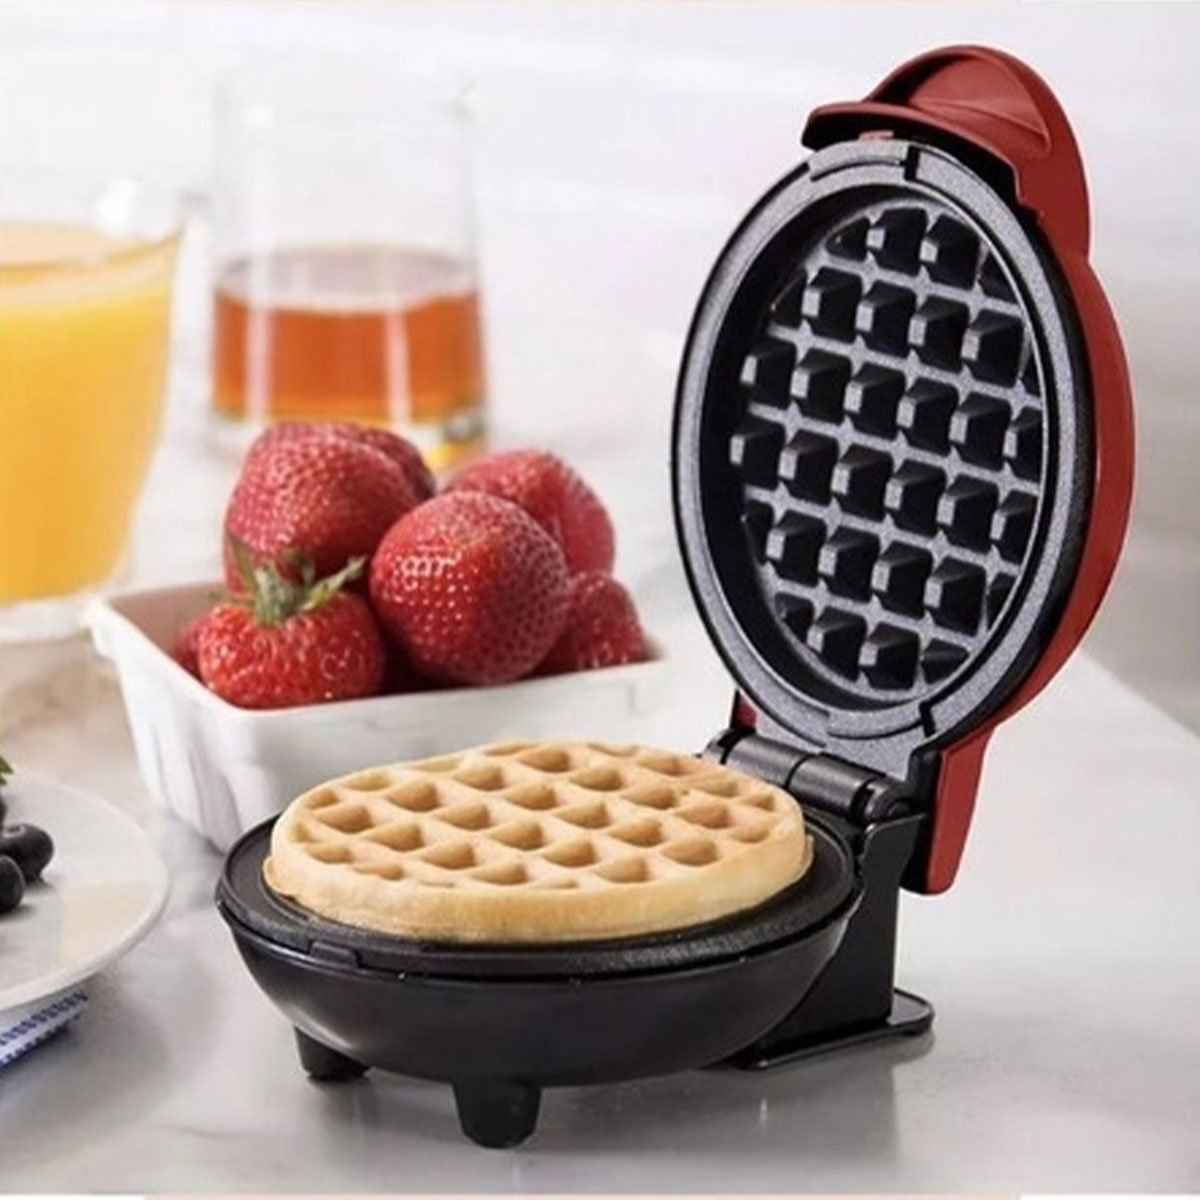 Mini Maquina de Waffles Panqueca Refeiçao Cafe da Manha Lanche Cozinha Placa Antiaderente Portatil L - 2